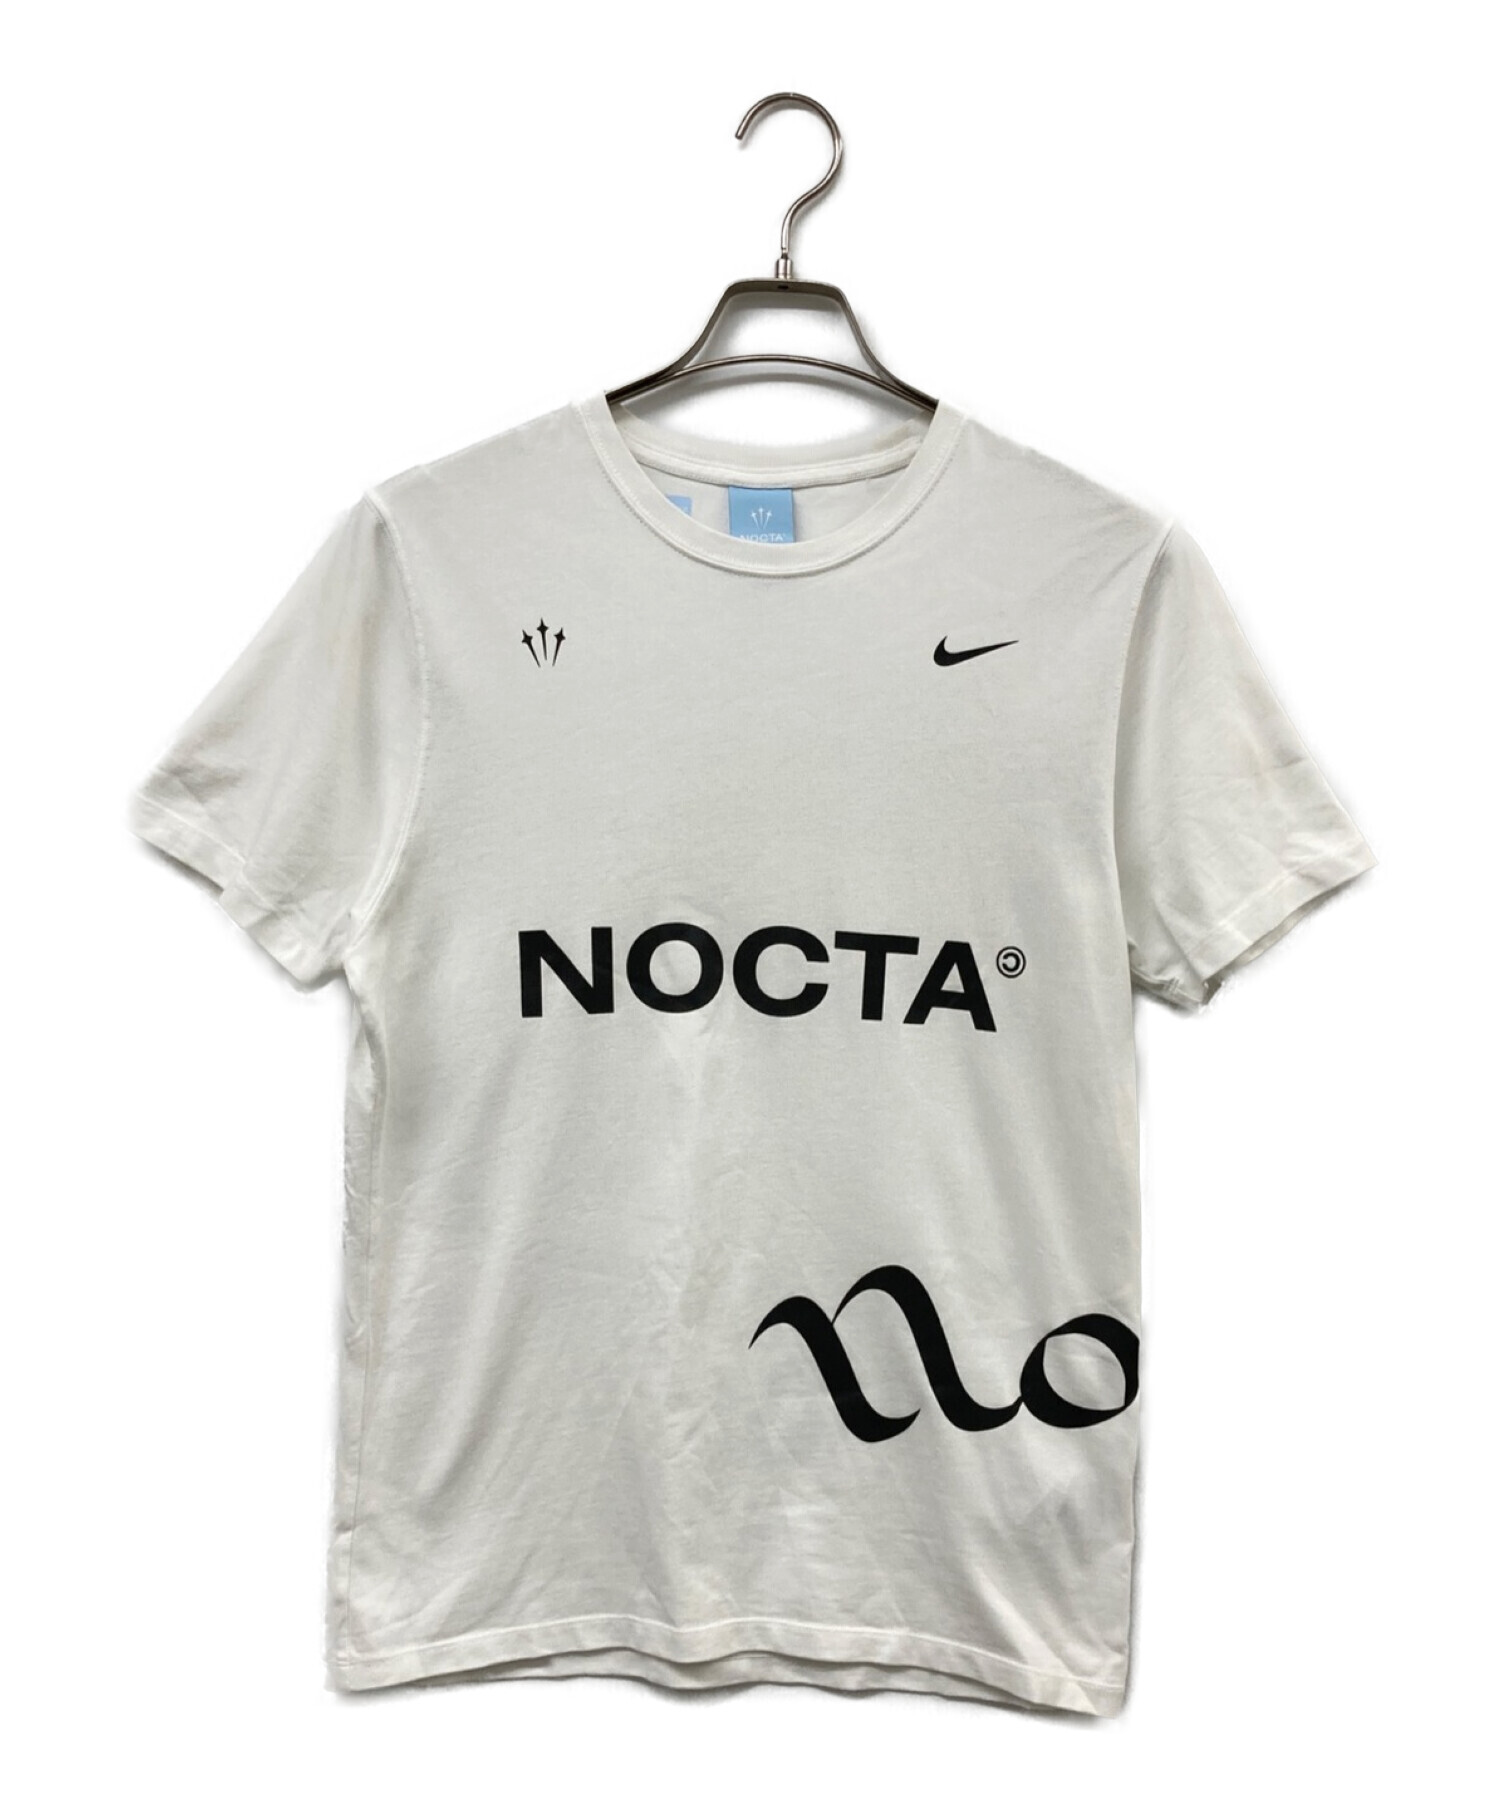 ★新品未使用正規品★ NIKE Nocta Tシャツ